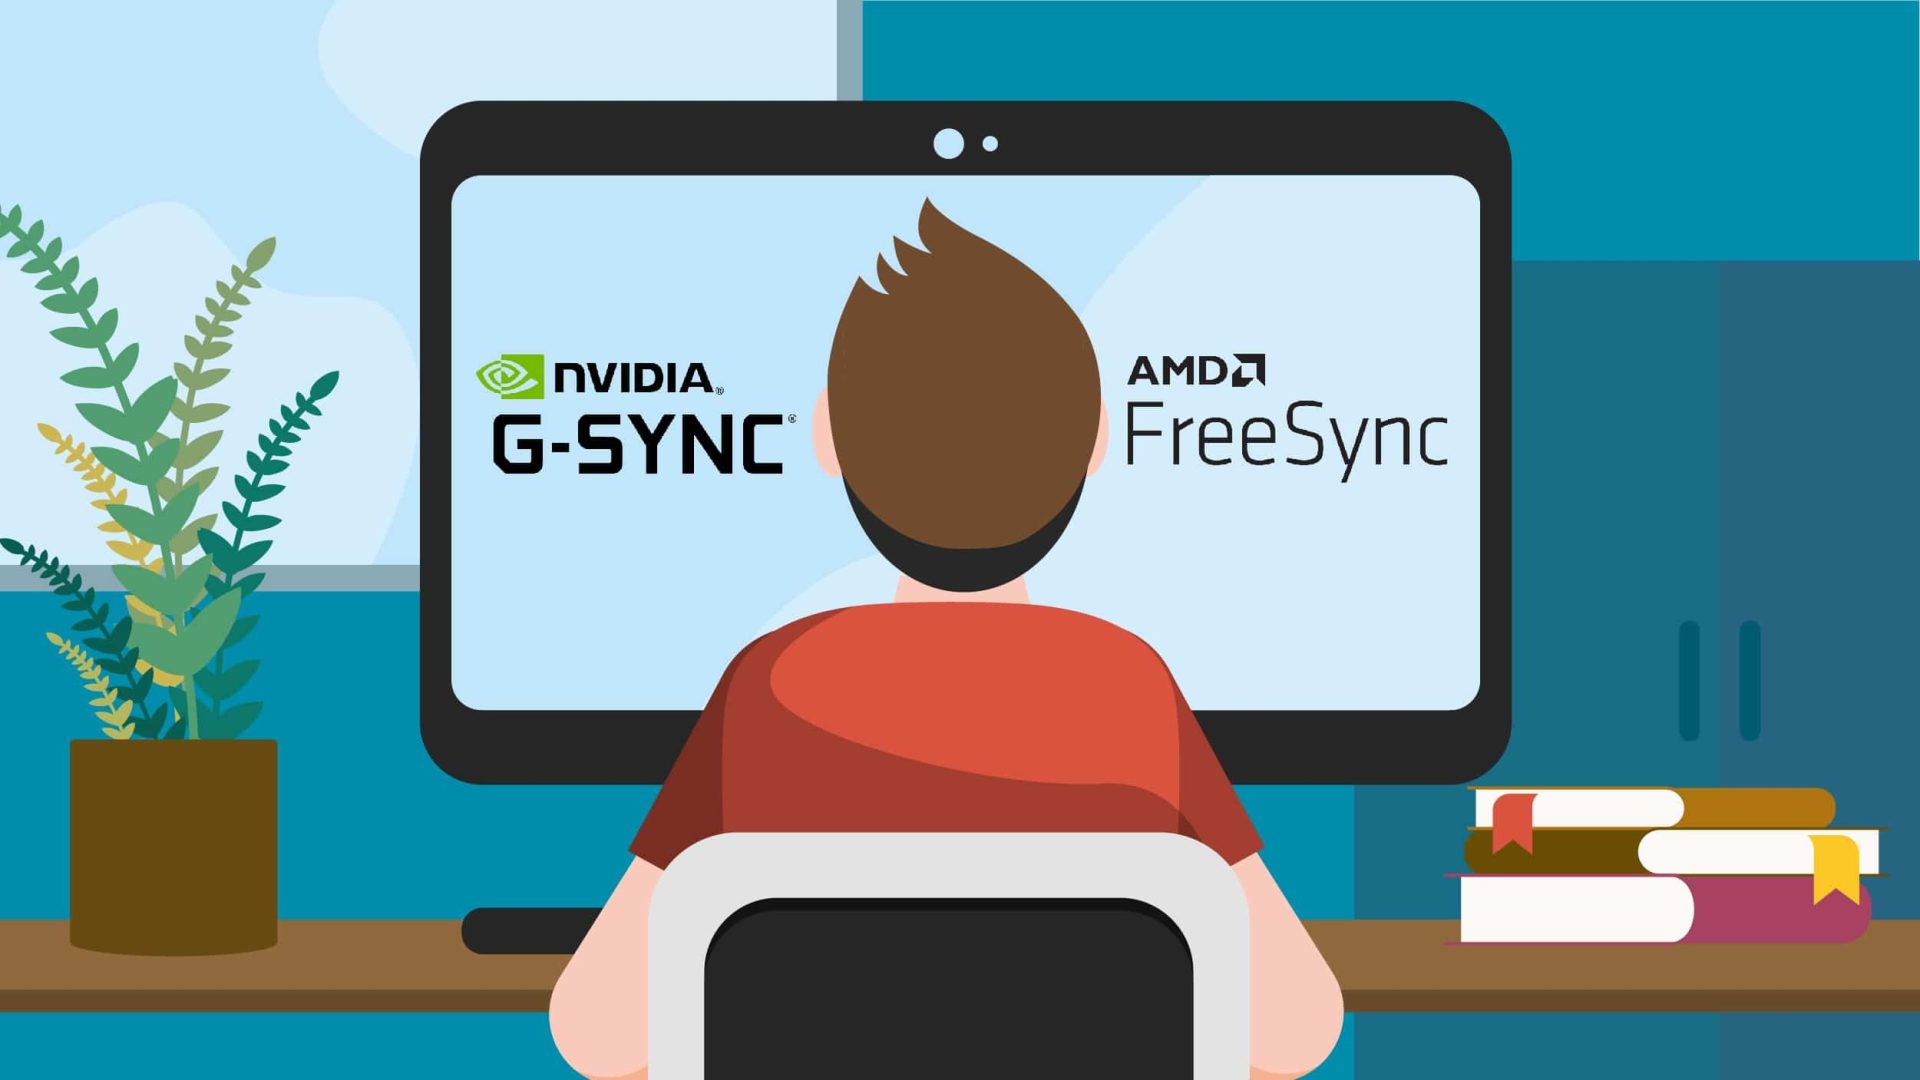 FreeSync vs G-Sync